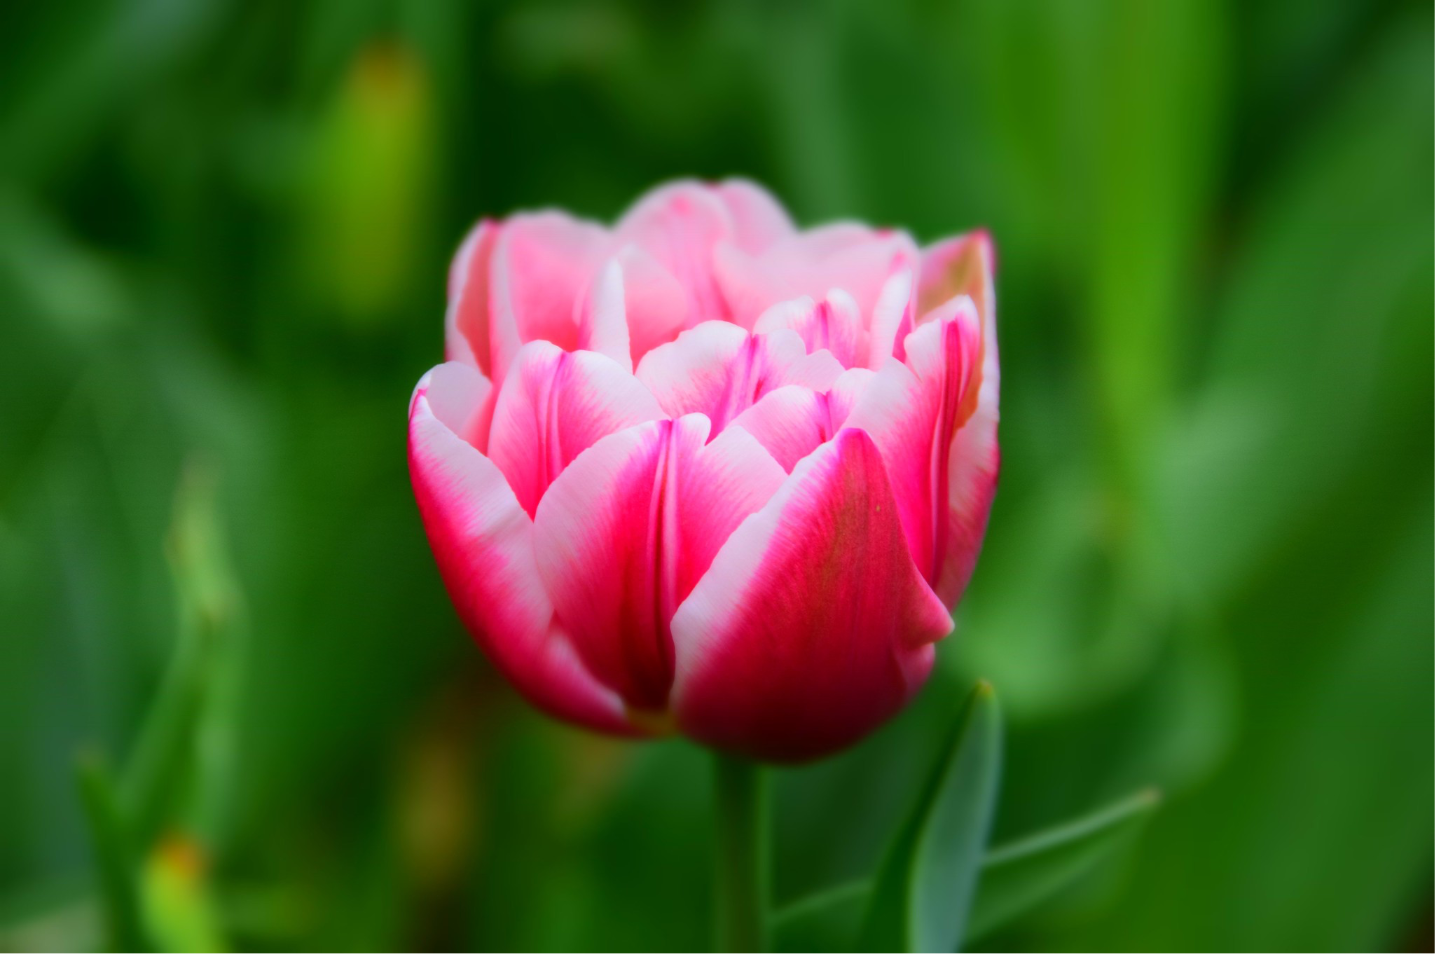 Pink tulip beginning to open.